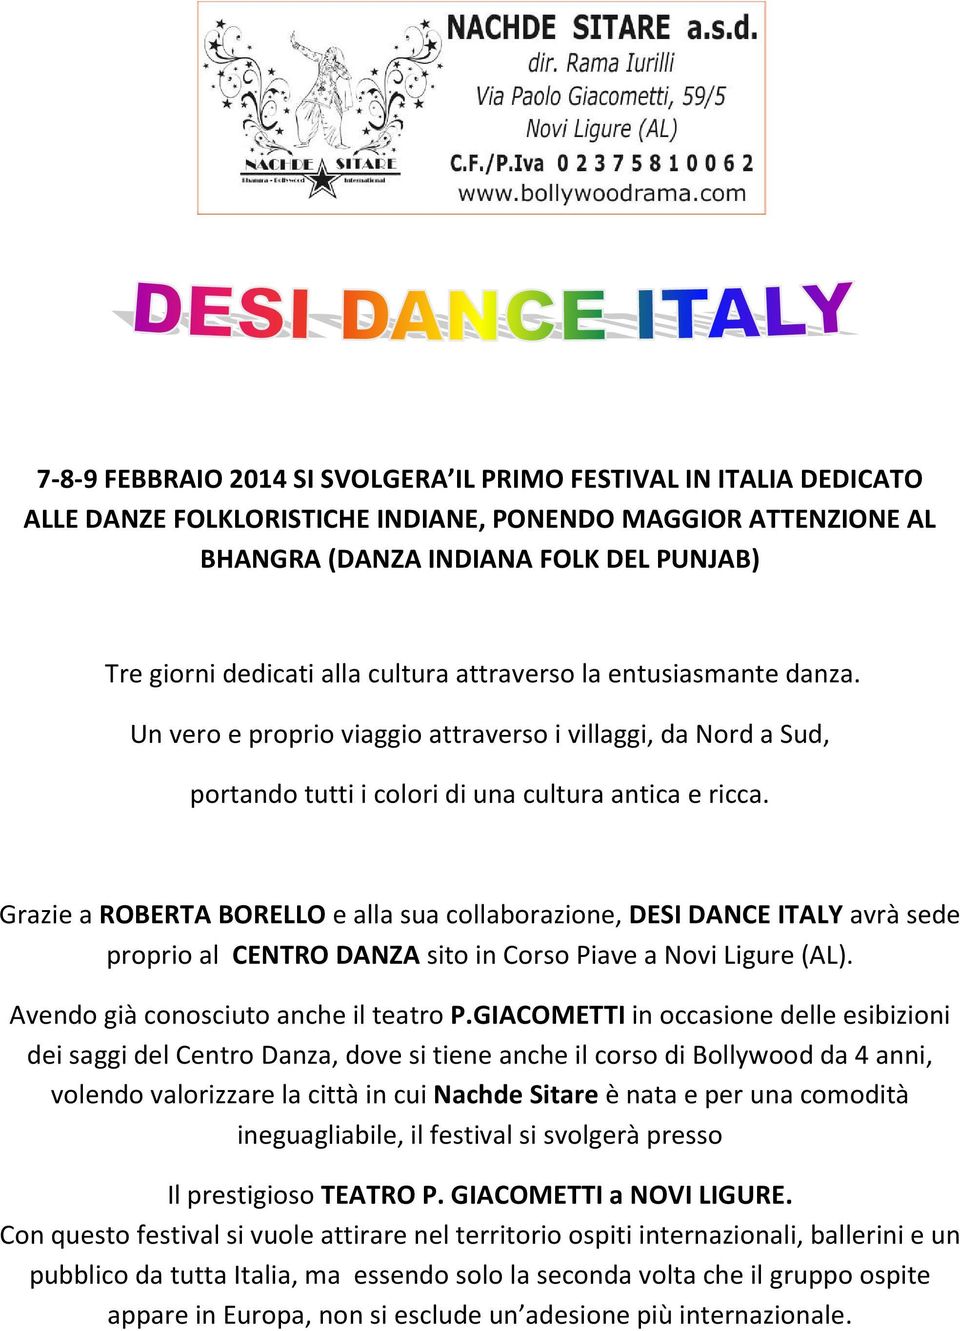 Grazie a ROBERTA BORELLO e alla sua collaborazione, DESI DANCE ITALY avrà sede proprio al CENTRO DANZA sito in Corso Piave a Novi Ligure (AL). Avendo già conosciuto anche il teatro P.